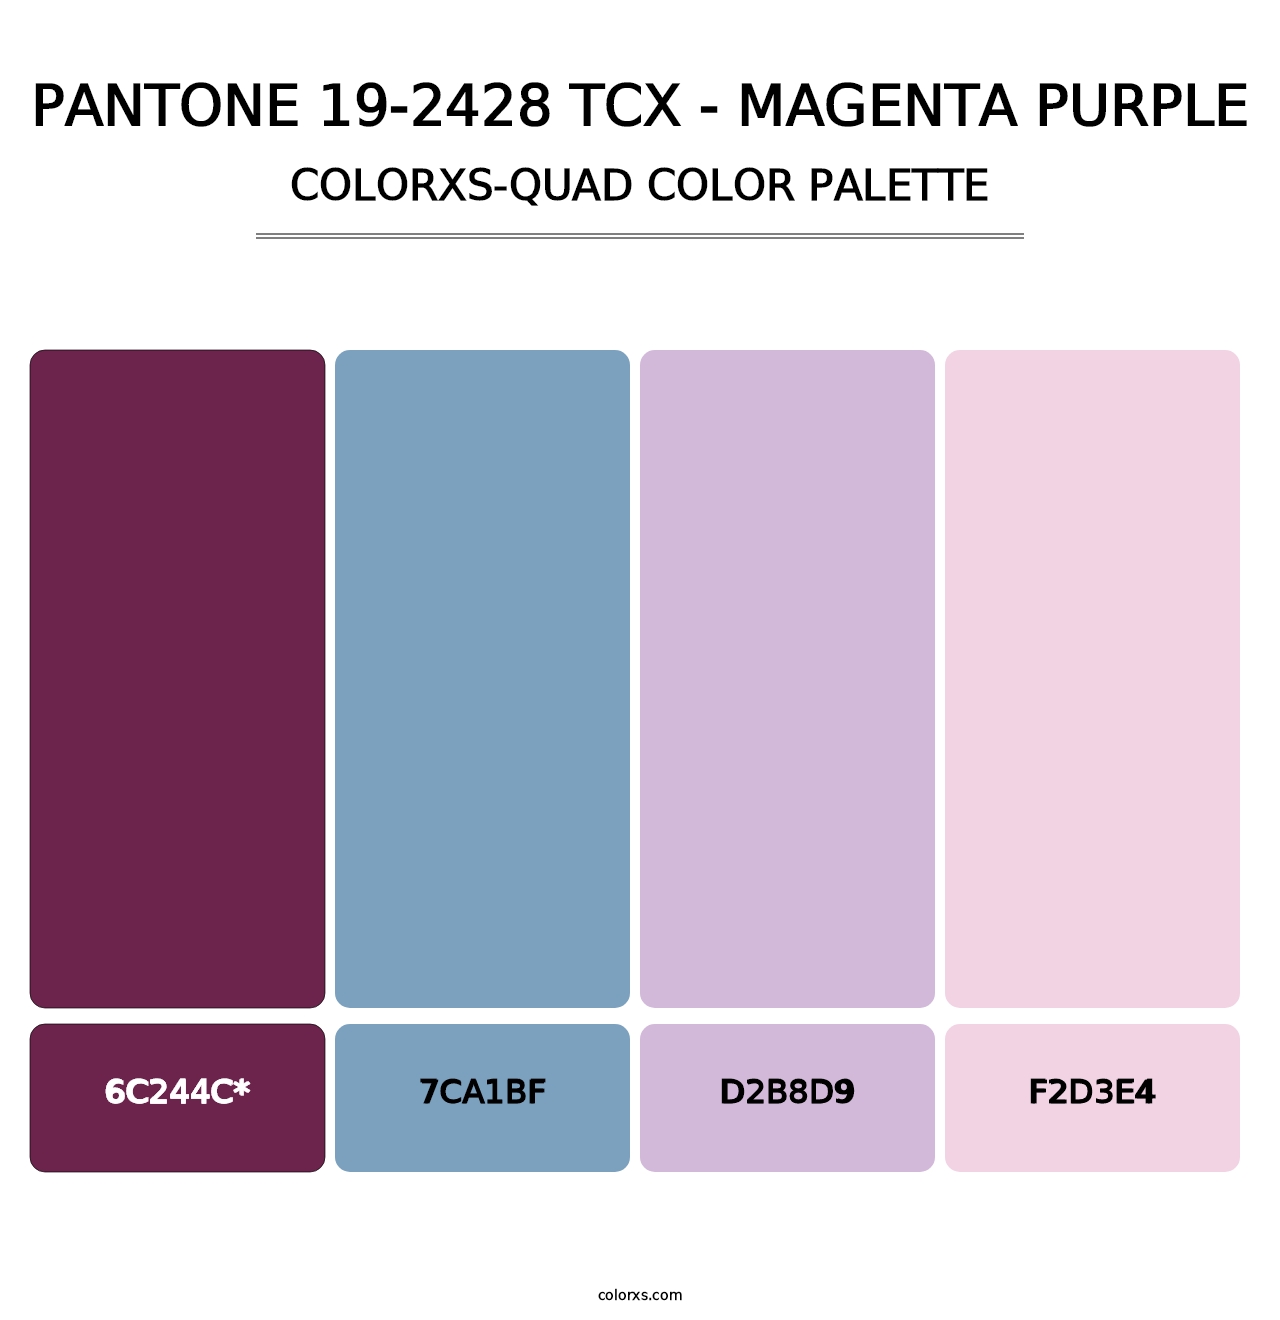 PANTONE 19-2428 TCX - Magenta Purple - Colorxs Quad Palette